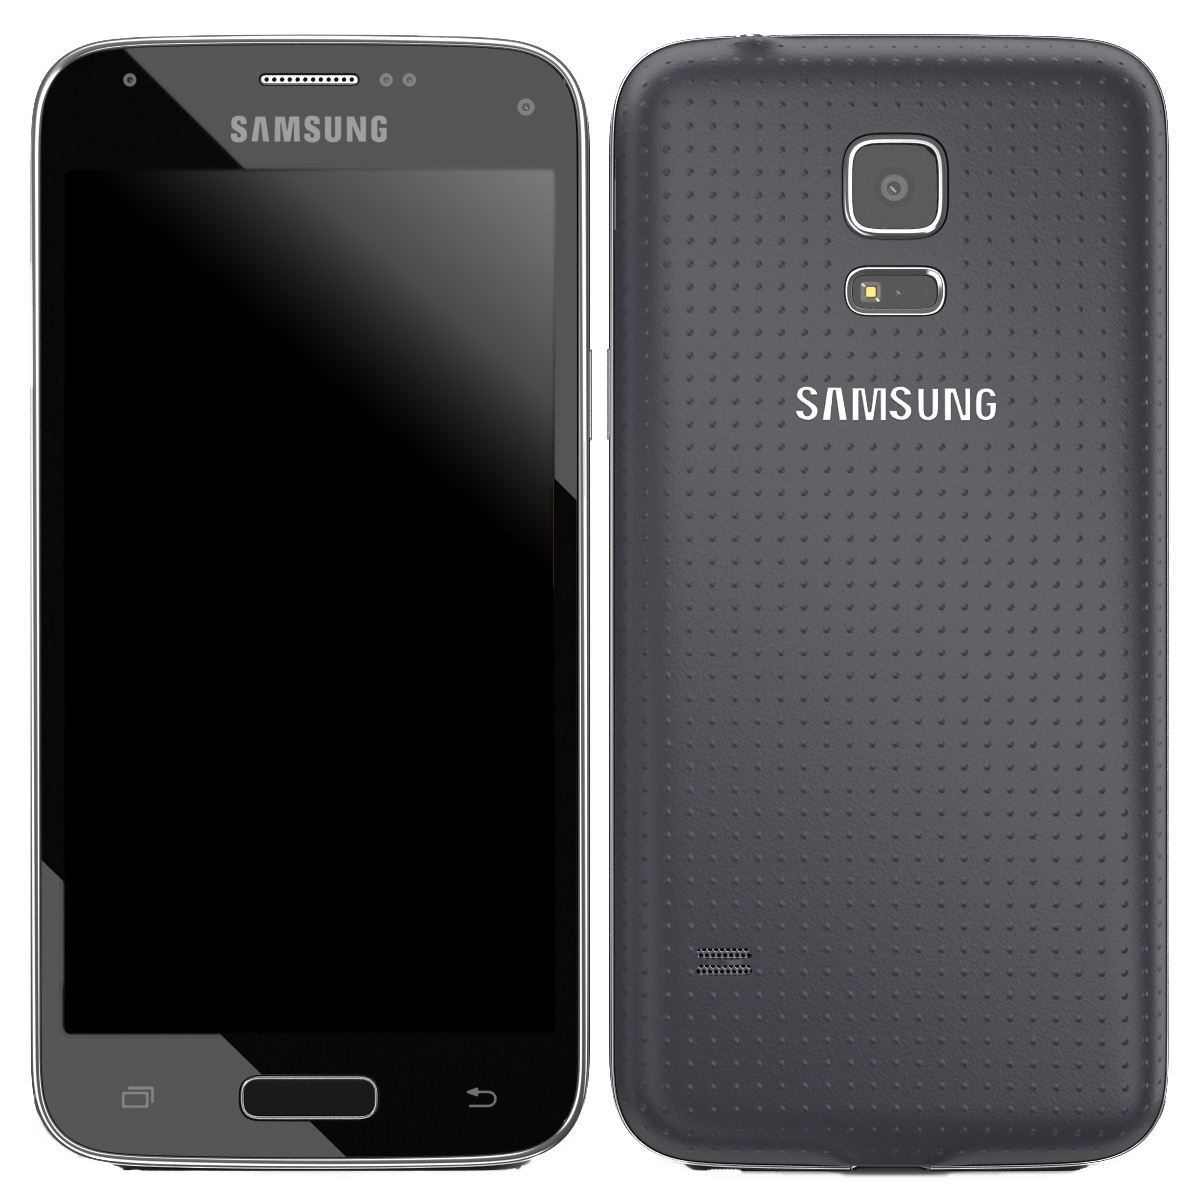 Samsung Galaxy S5 Mini schwarz - Onhe Vertrag